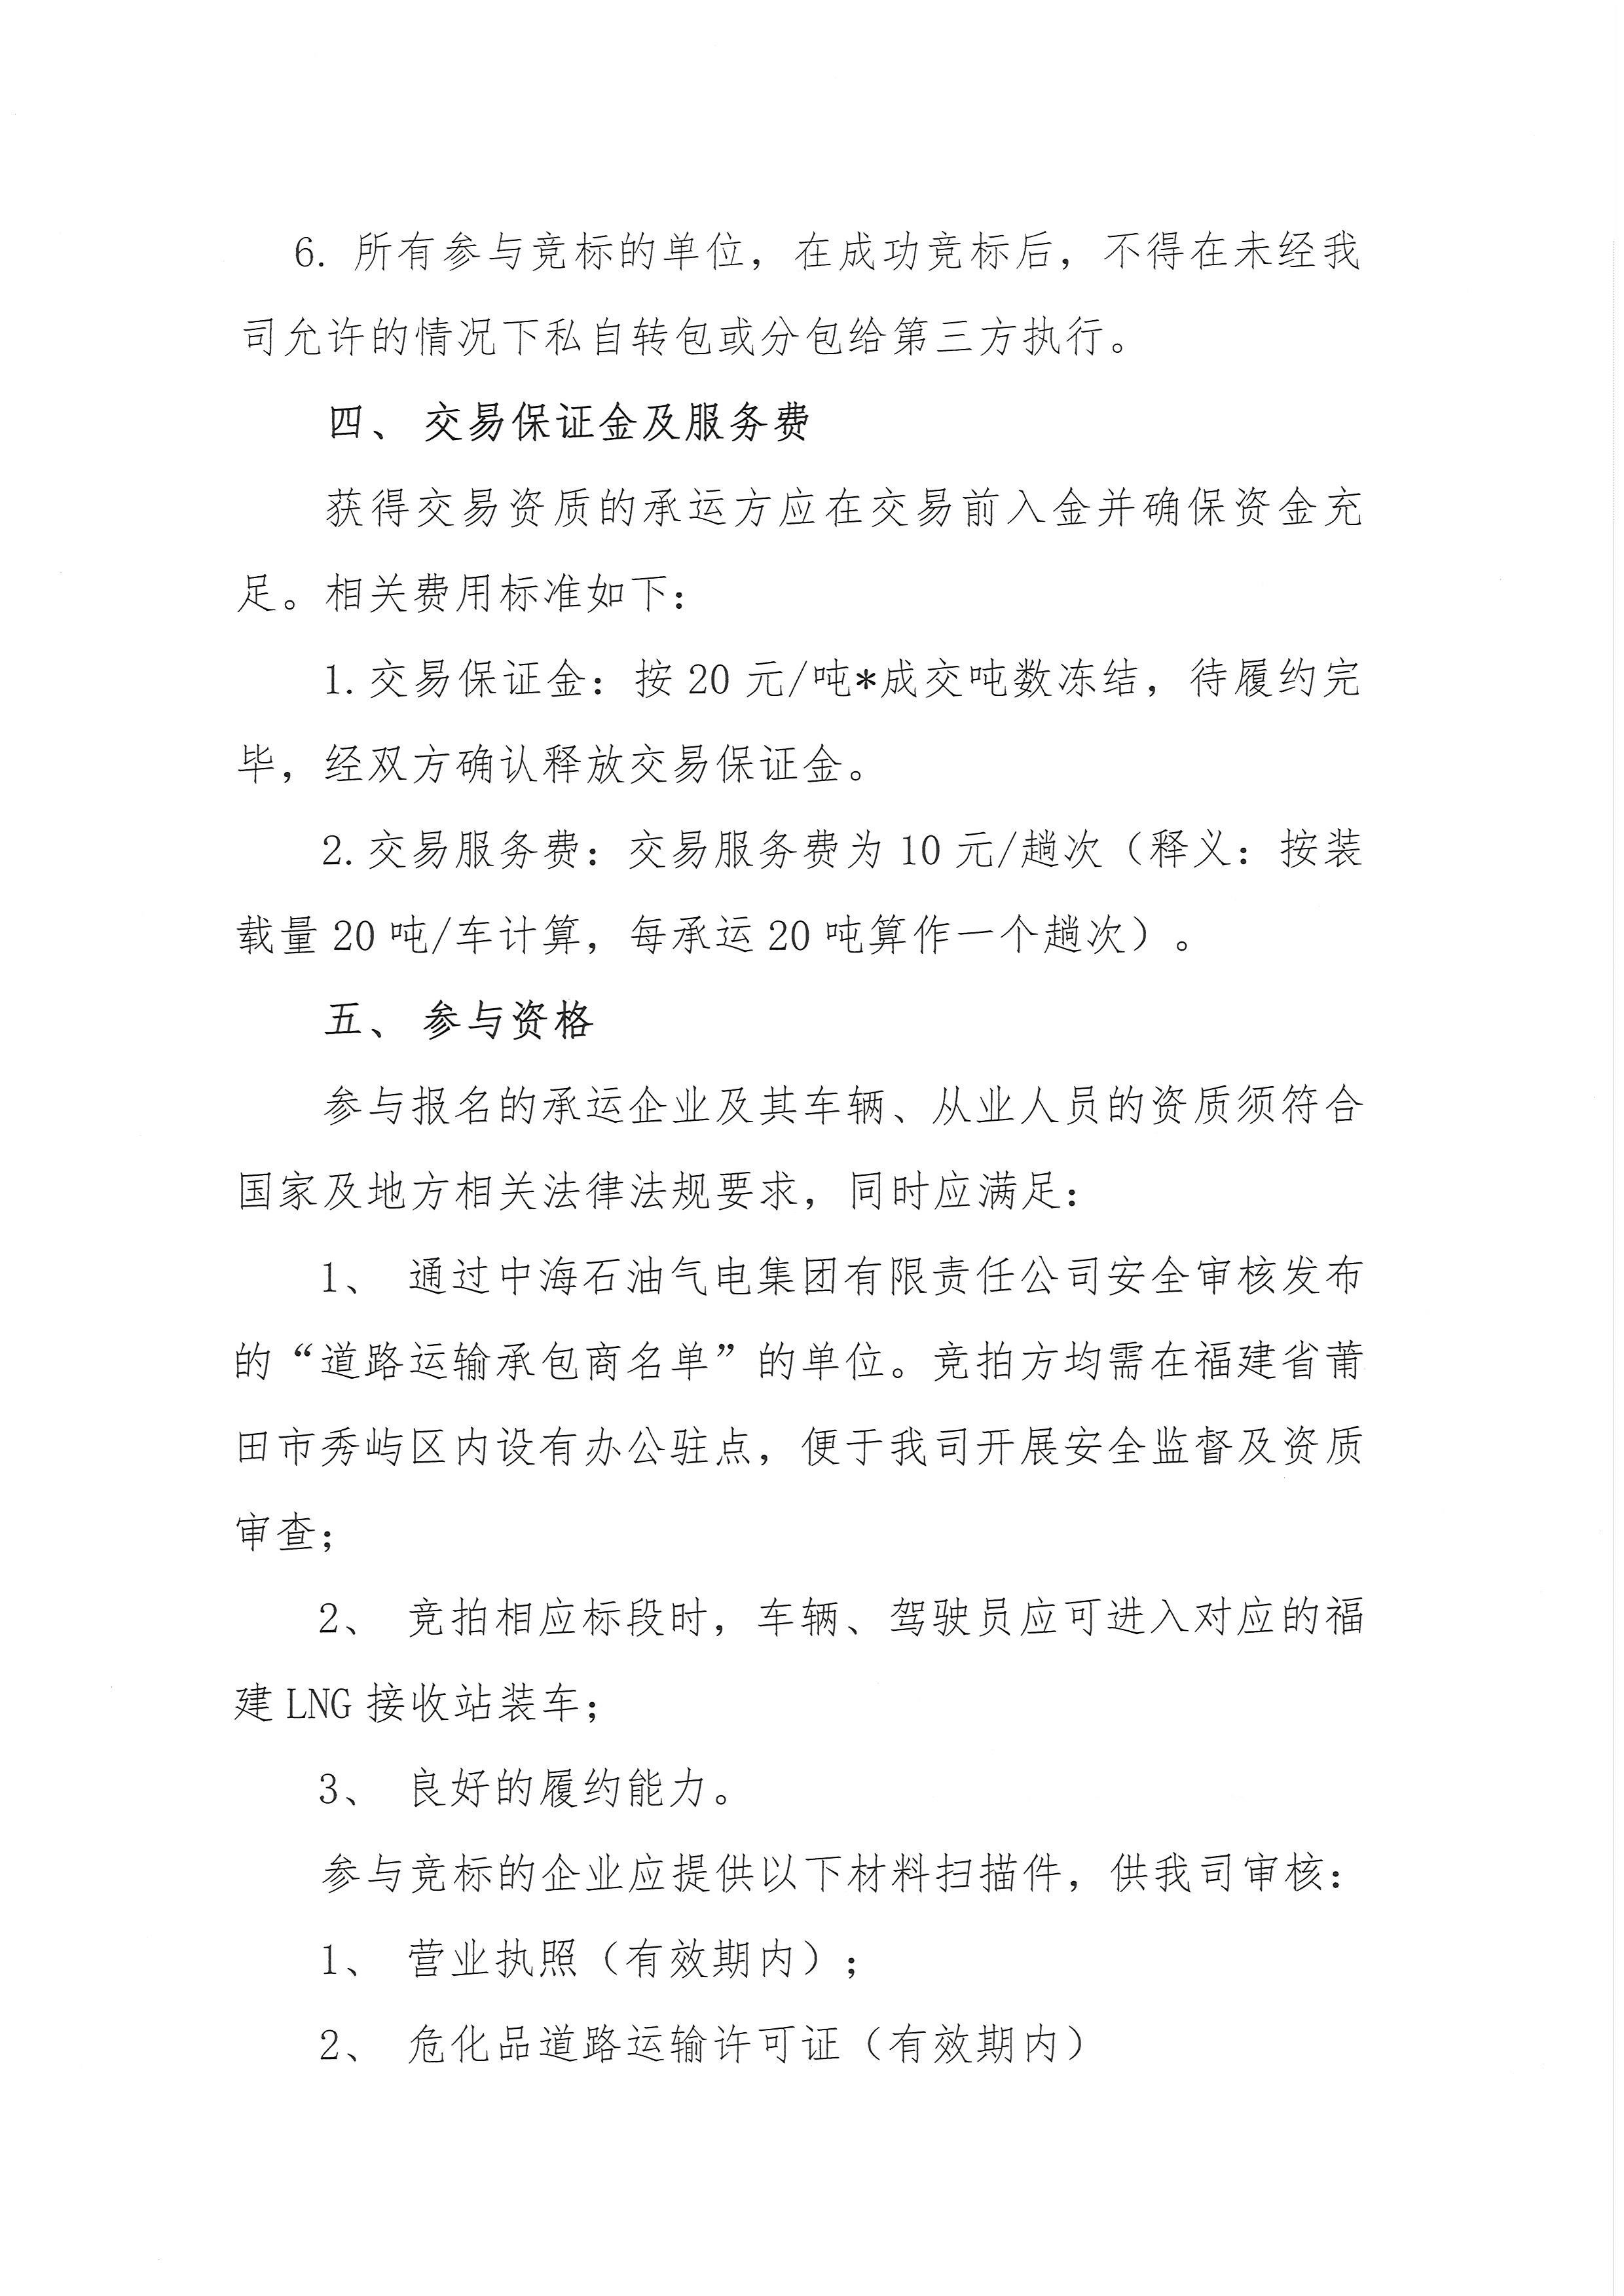 福建中闽物流有限公司-9、10月份竞价公告(3)_页面_4.png